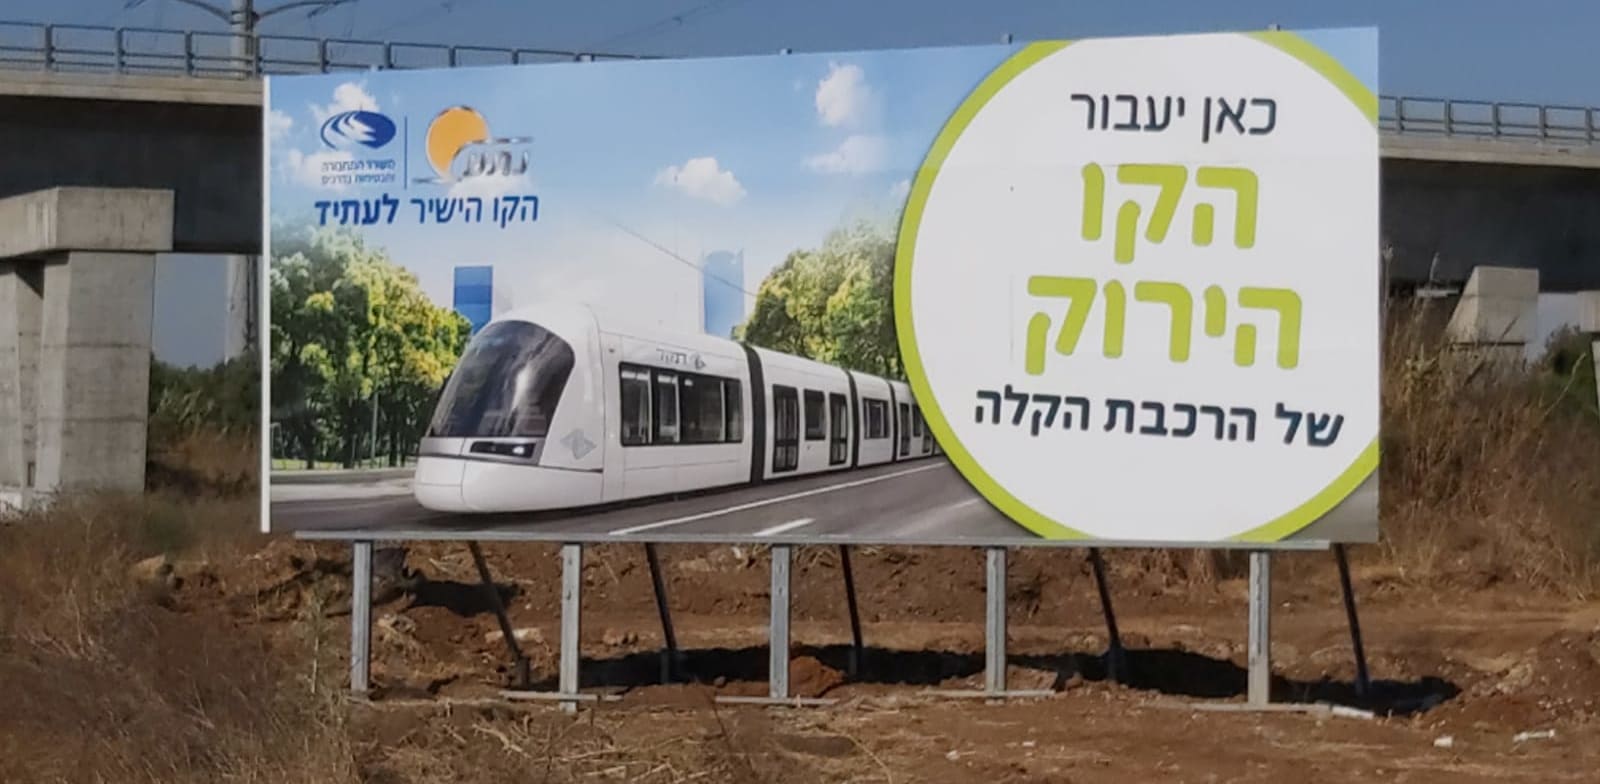 שלט לקו הירוק של הרכבת הקלה בכניסה לחולון (כביש 4) / צילום: נת''ע